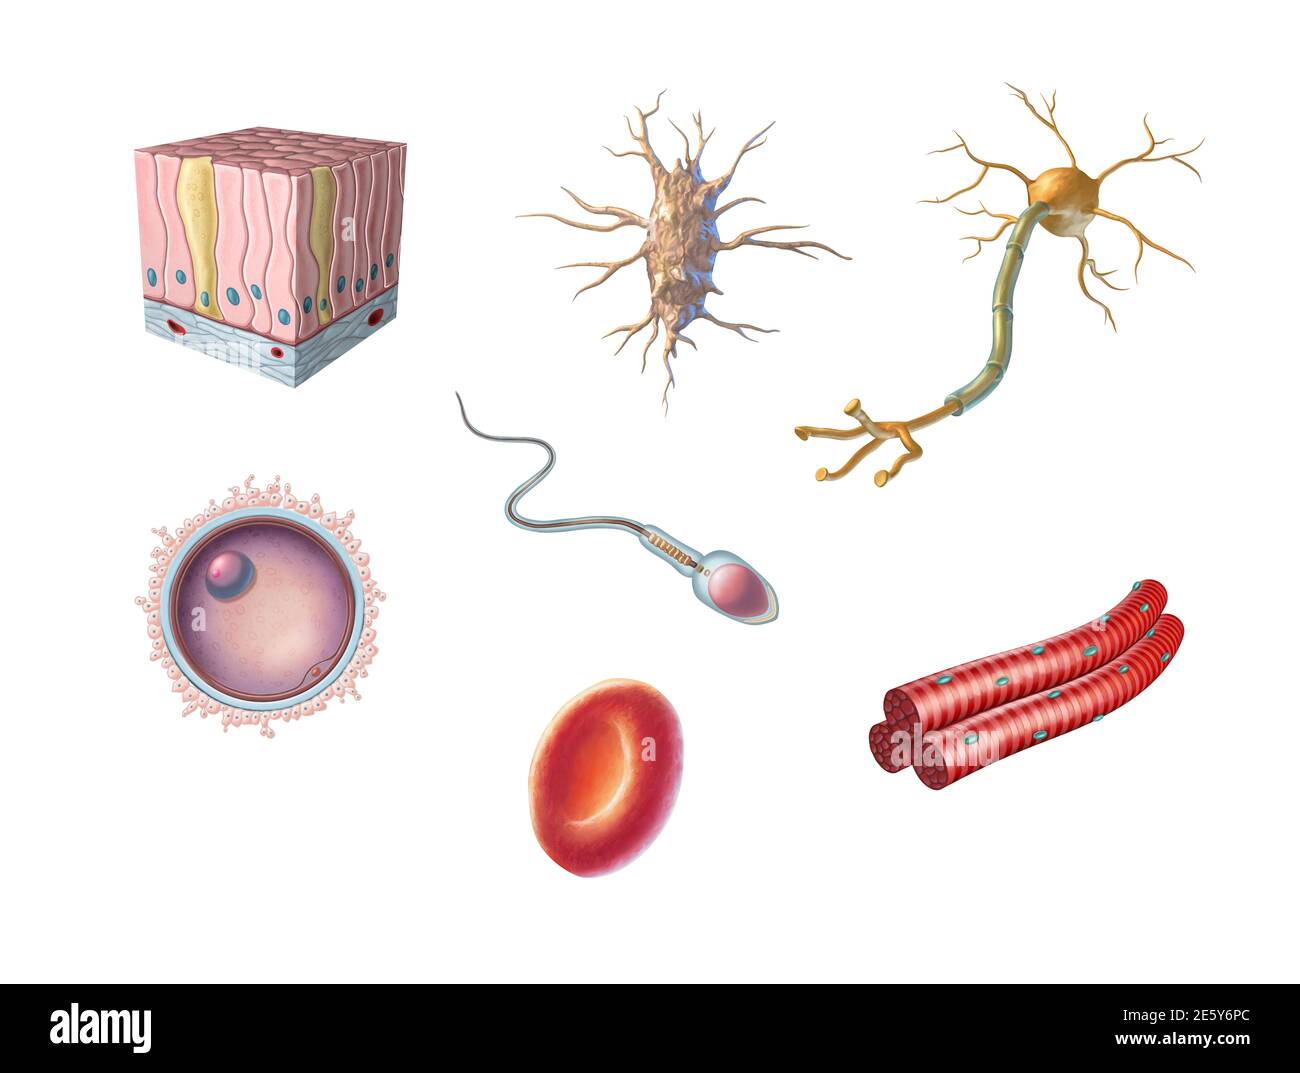 Verschiedene Arten von menschlichen Zellen einschließlich einer Eizelle, Spermien, rote Blutkörperchen, Osteozyten, Neuronen, Skelettmuskeln und säulenartigen Epithelzellen. Digital Stockfoto